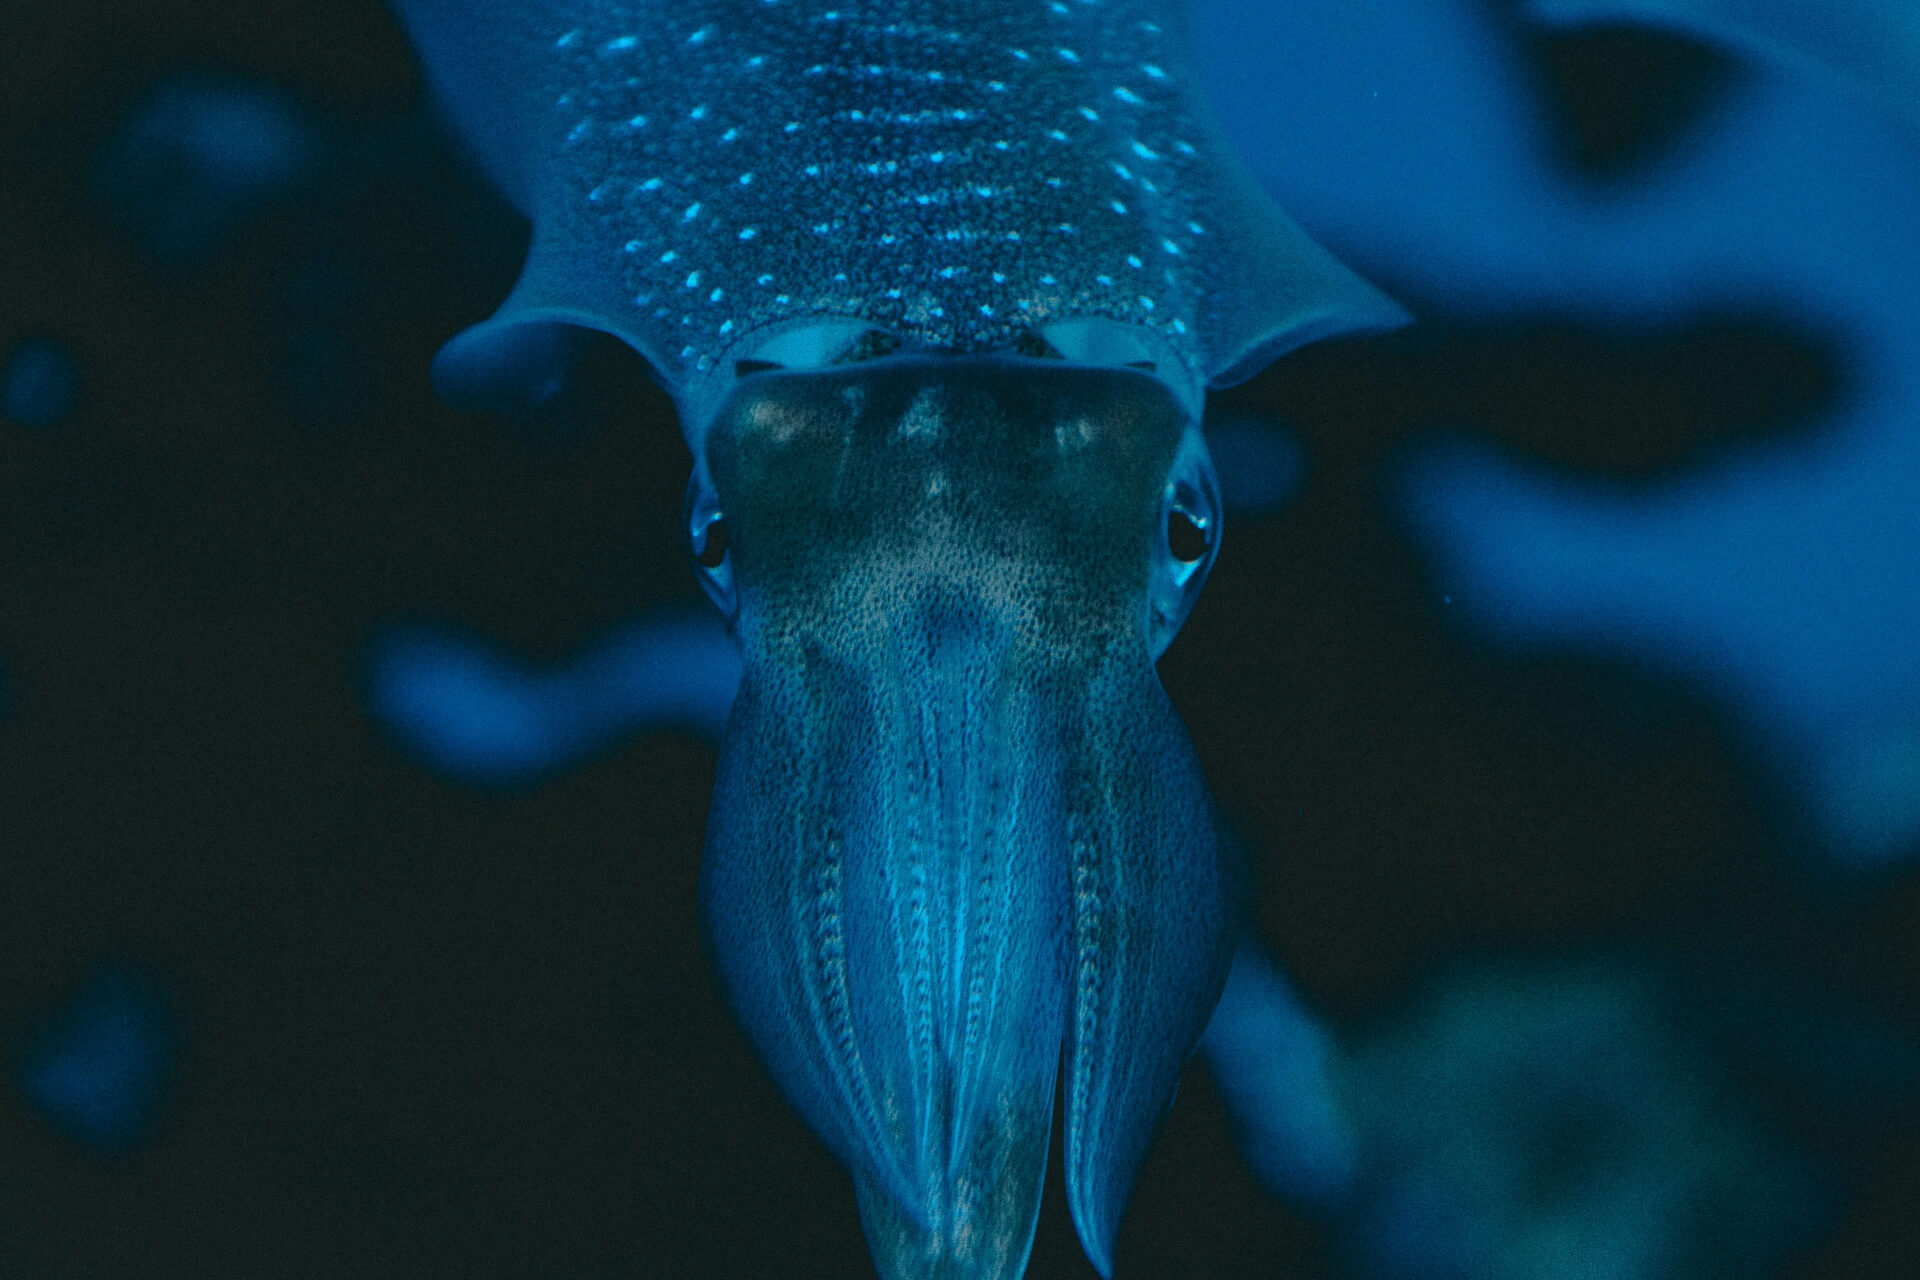 squid floating in the ocean